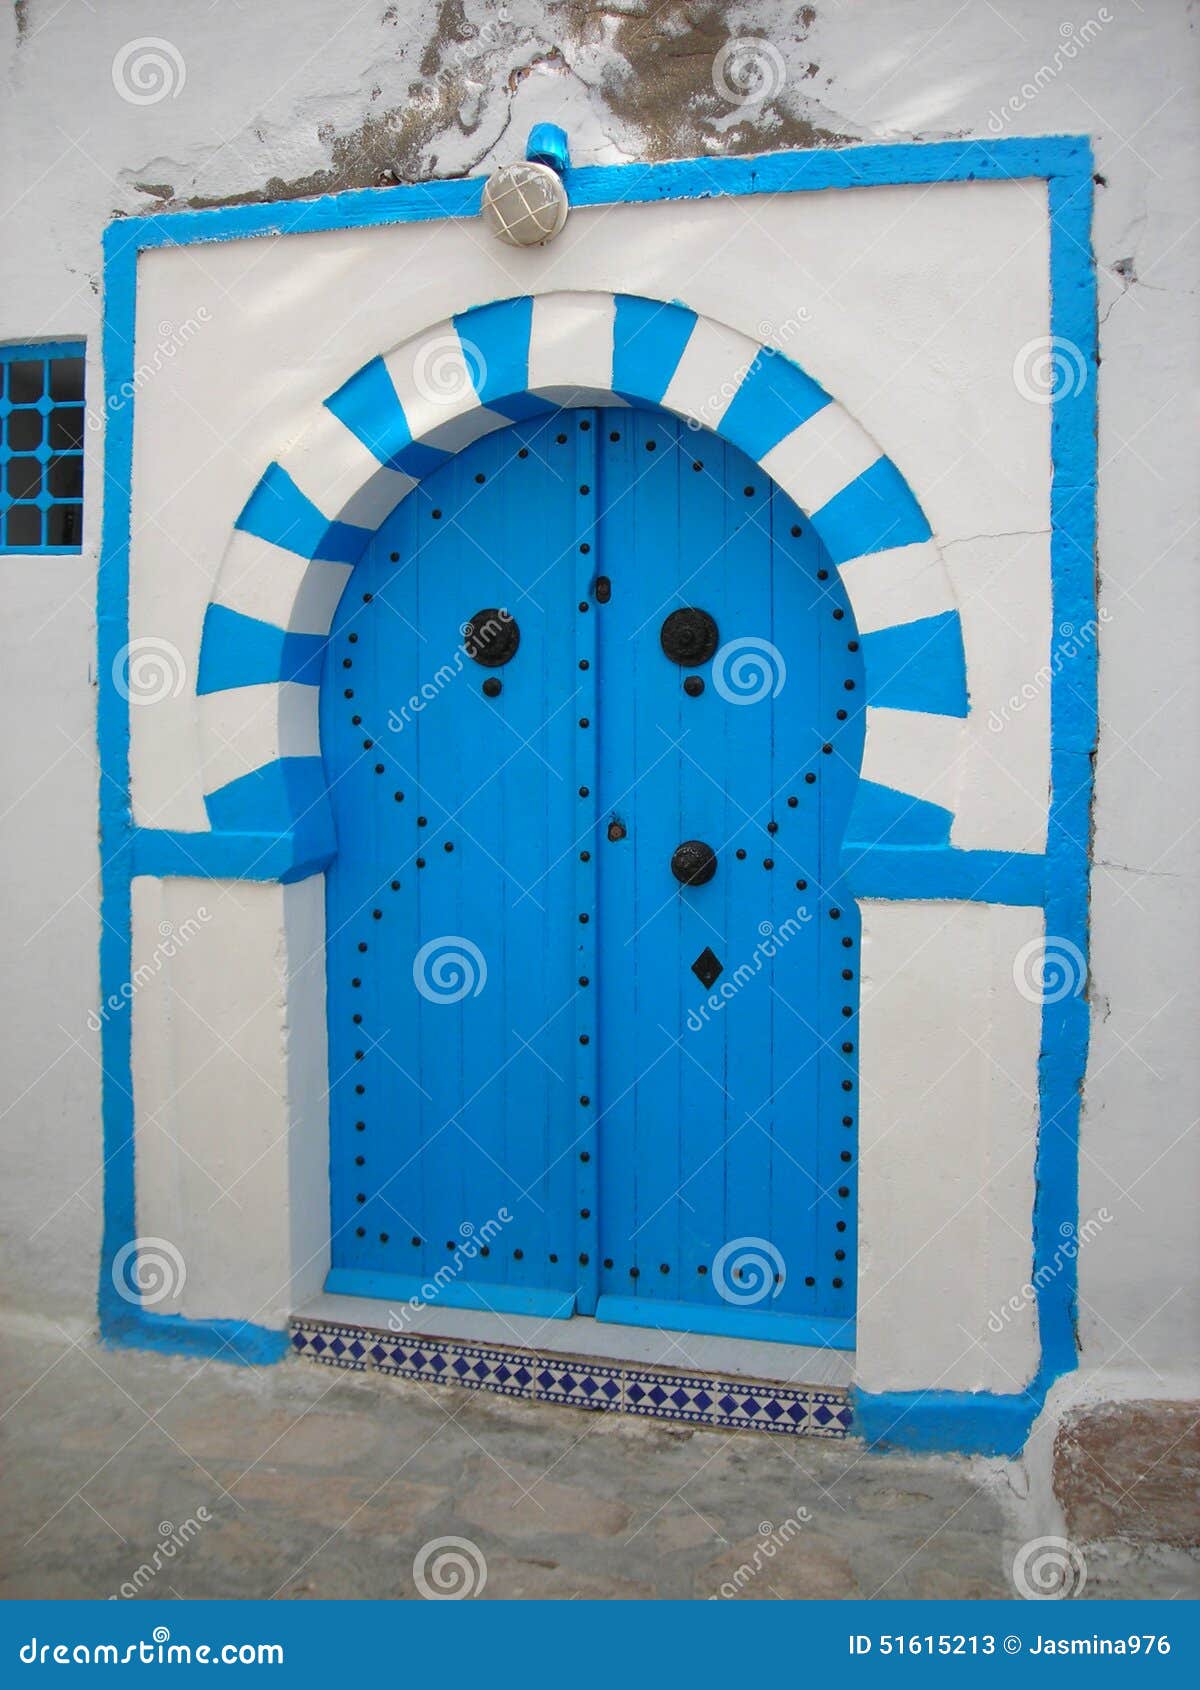 architecture of hammamet, tunisia